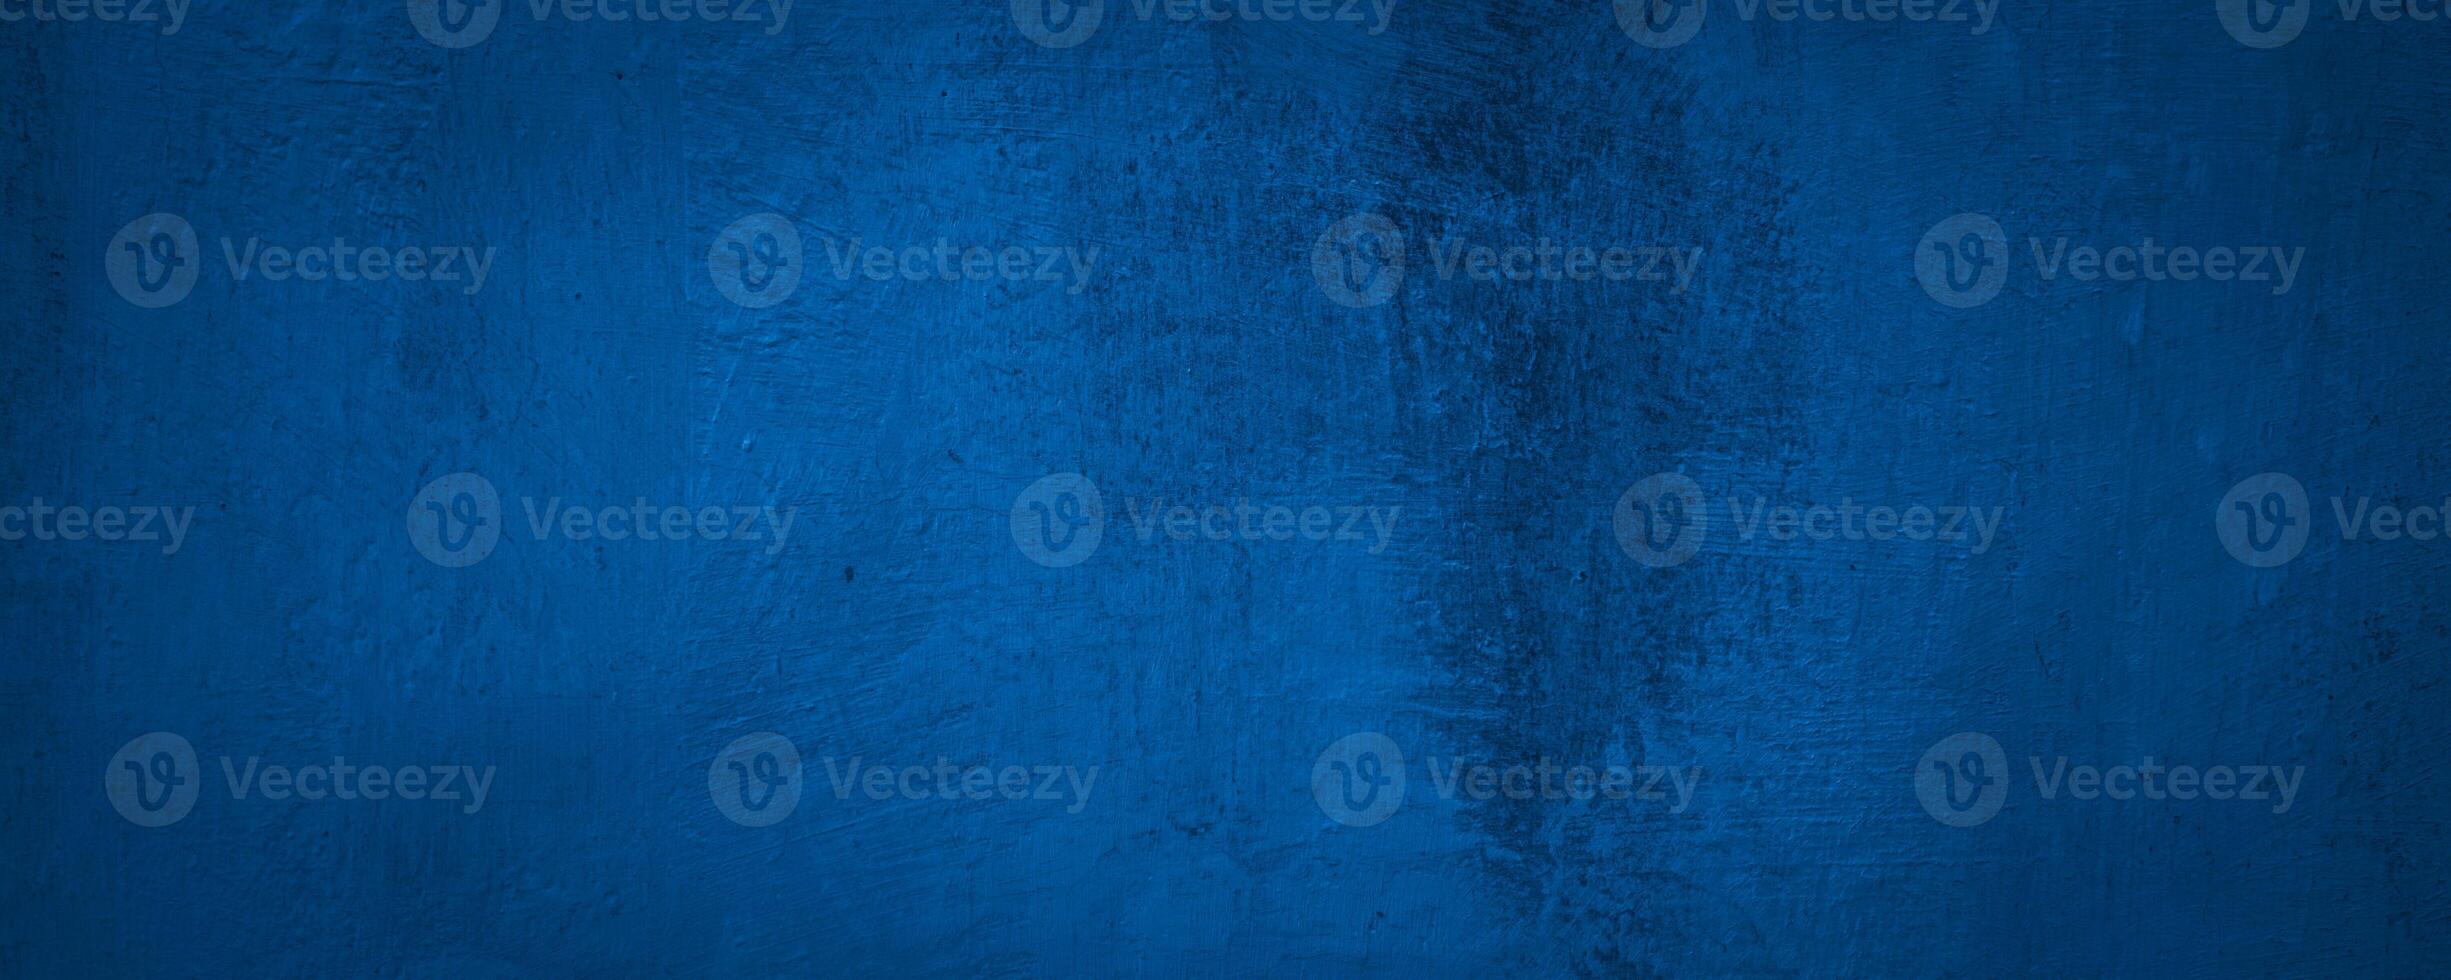 Textur abstrakt Blau Mauer Hintergrund foto